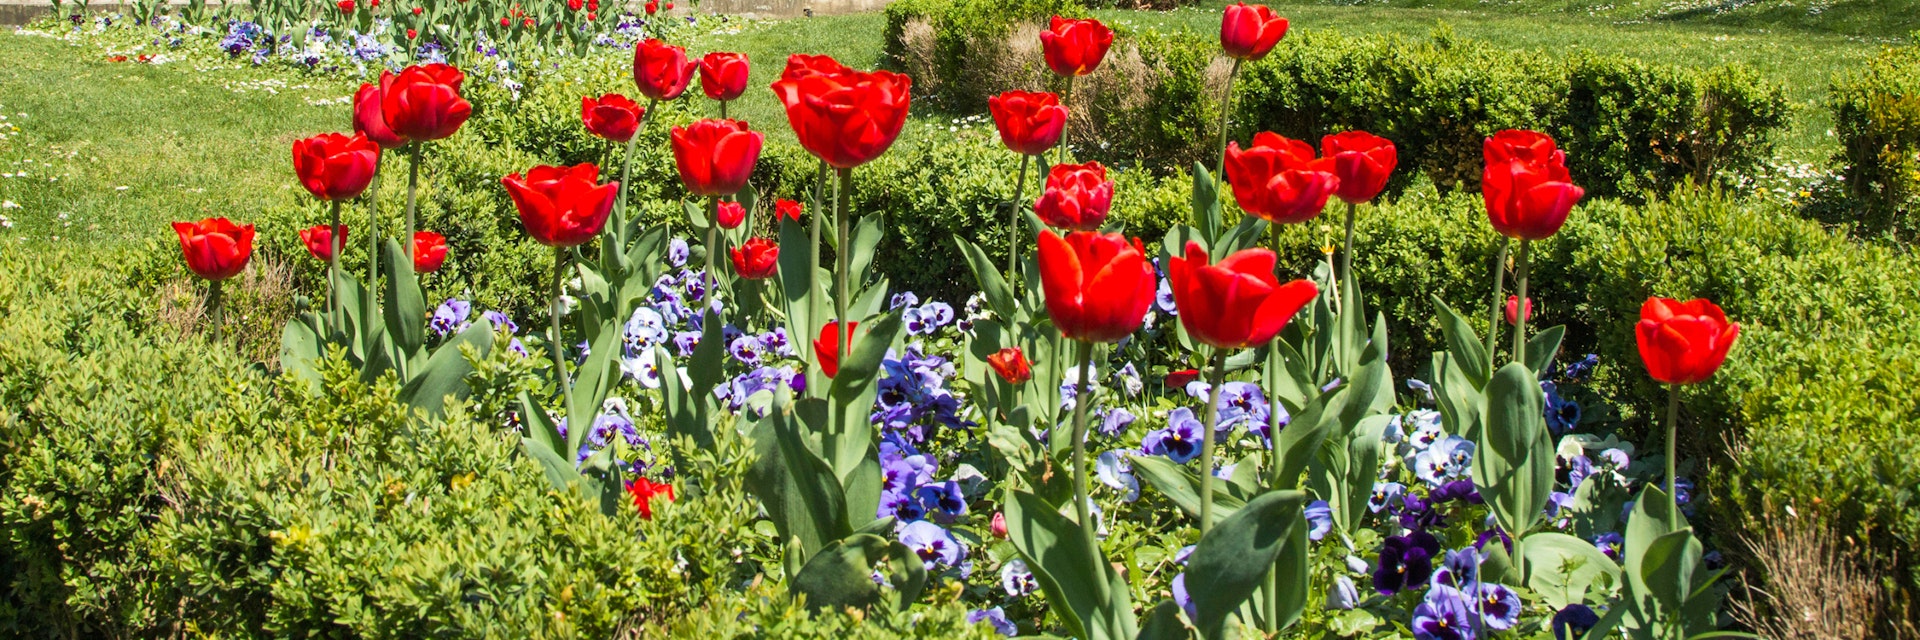 Tulips and music pavilion in Zrinjevac park in Zagreb, Croatia